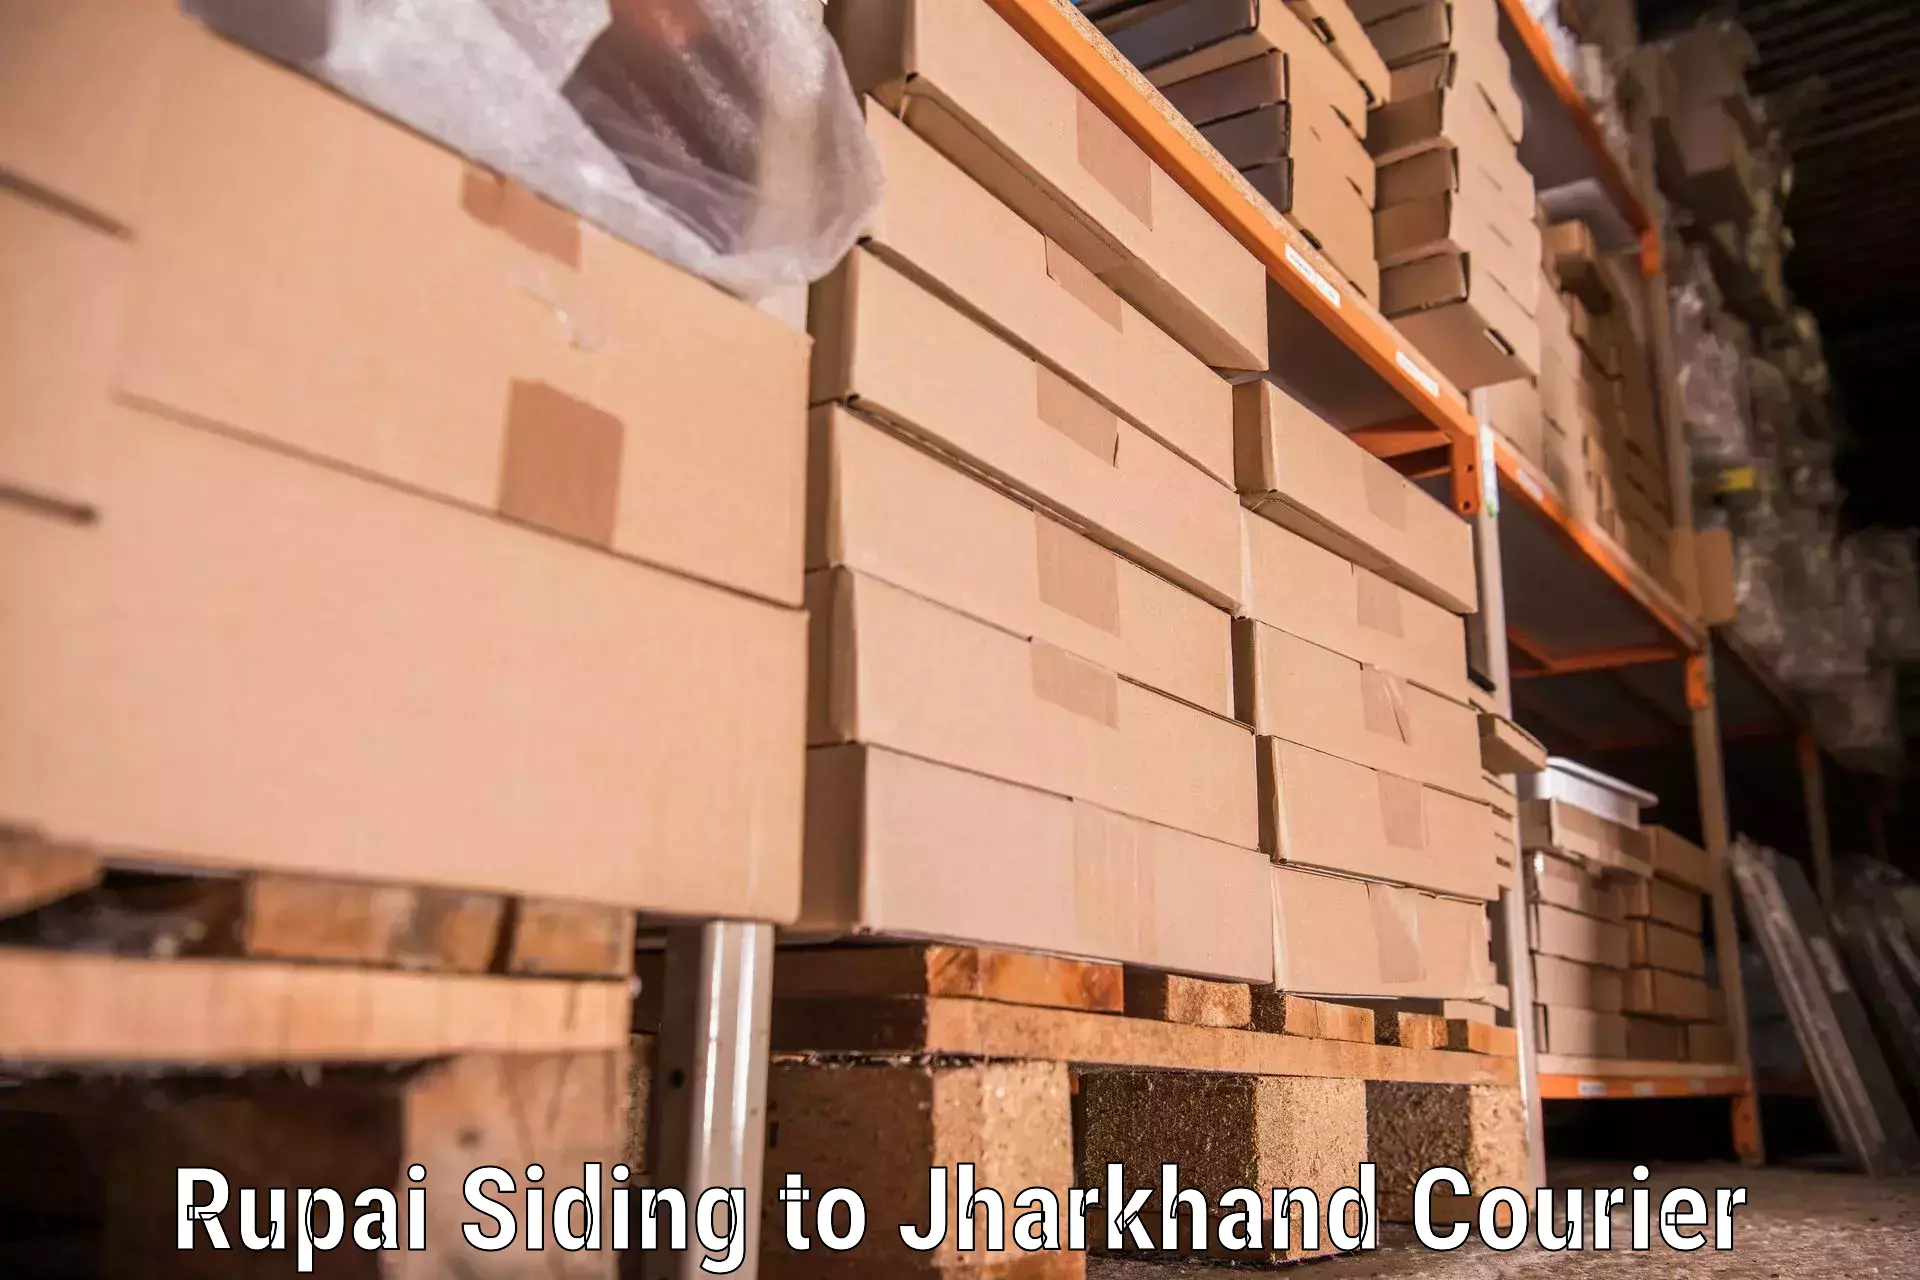 Moving and handling services Rupai Siding to Nagar Untari